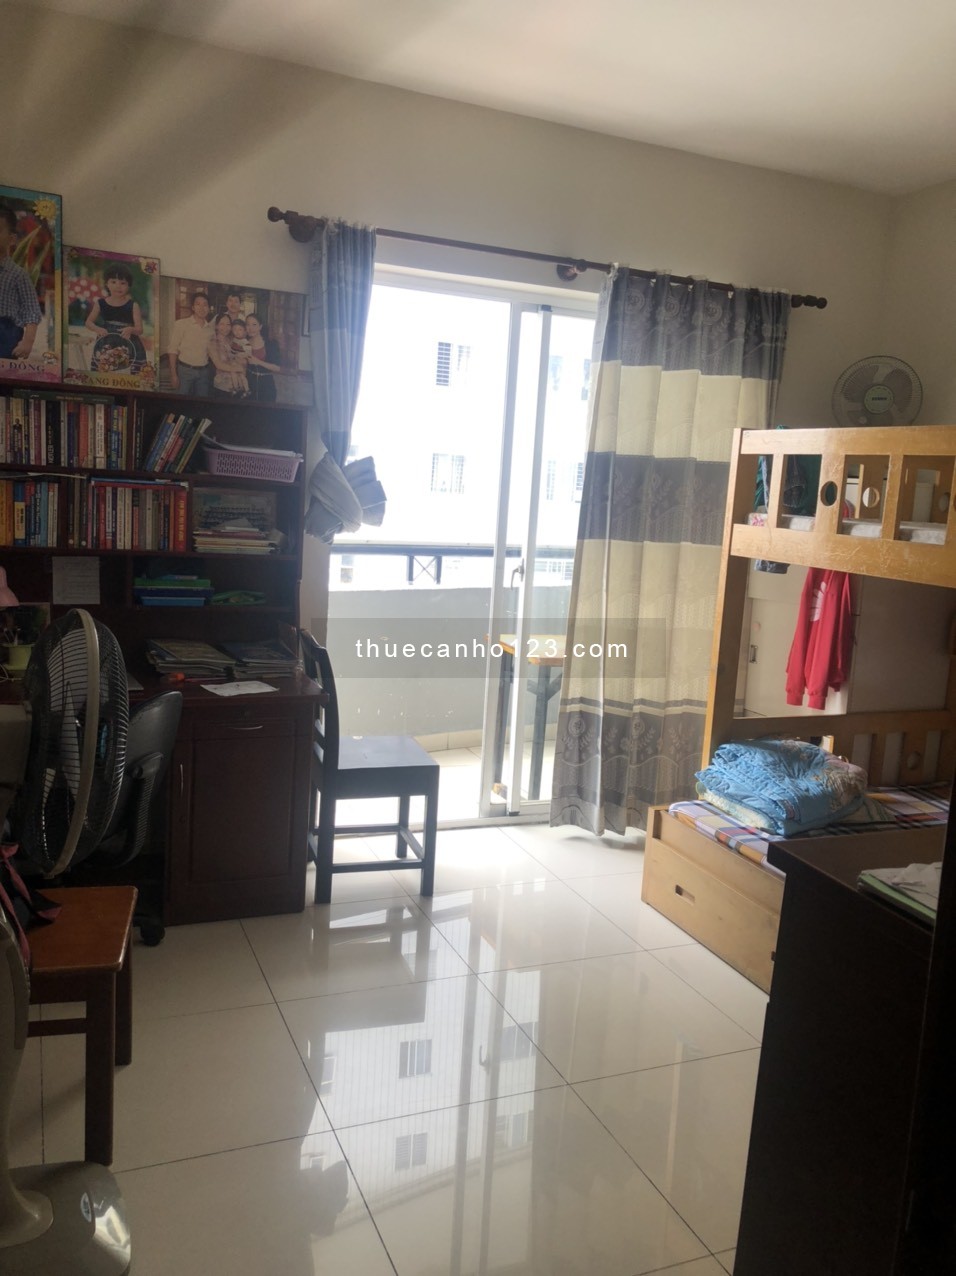 Cần cho thuê nhanh căn hộ Phú Thạnh Tân Phú 82m2, 2pn giá 8tr5 có nội thất cơ bản